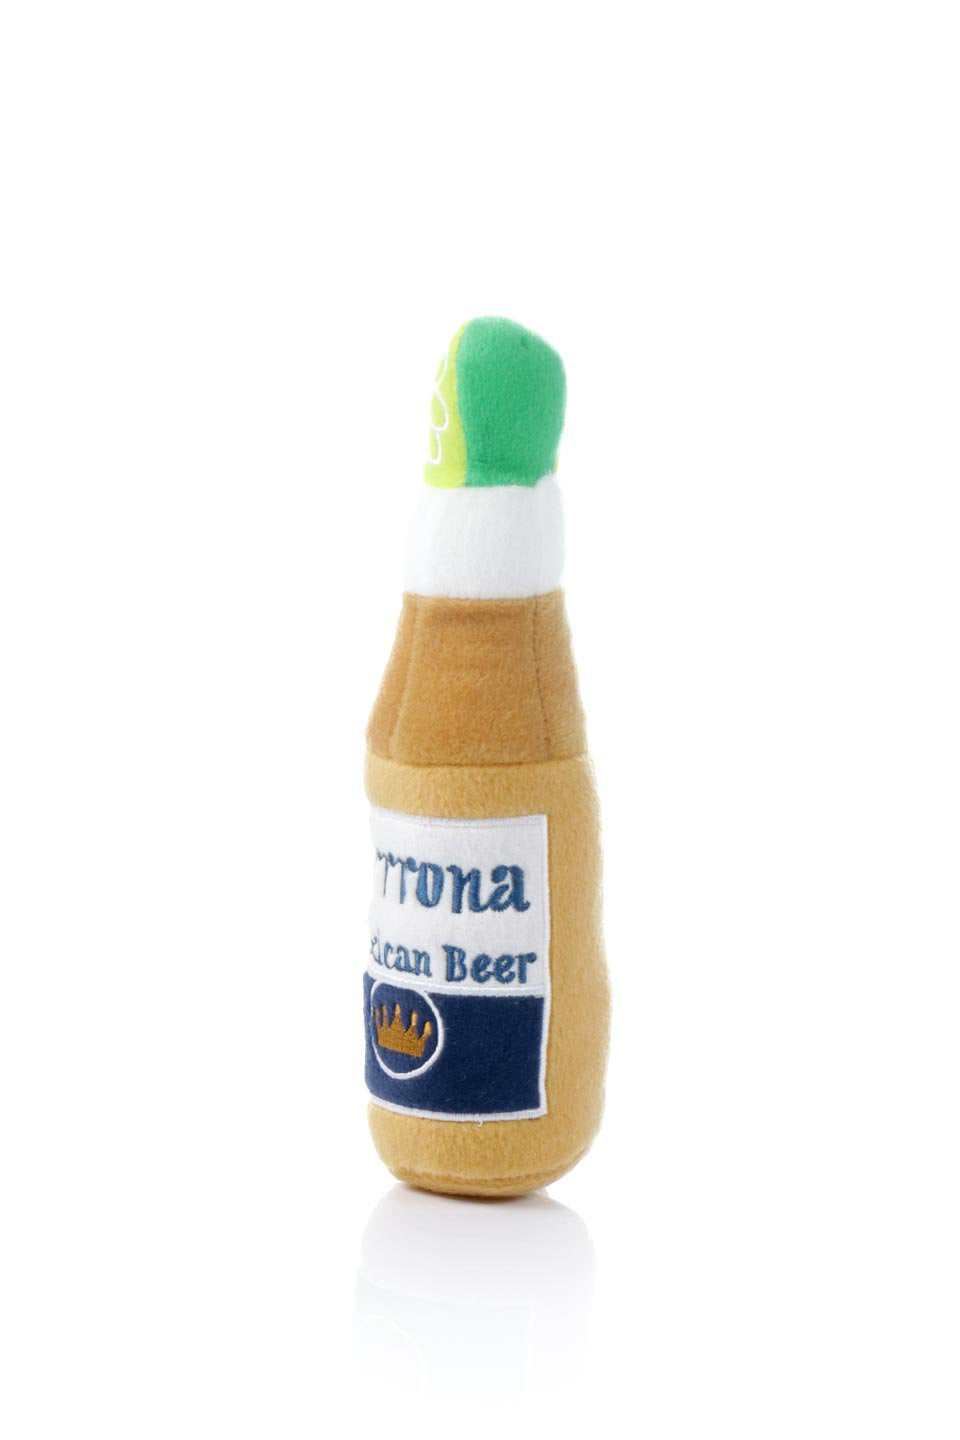 Grrrona Beer Bottle Plush Toy (L) コロナ瓶ビール・パロディーぬいぐるみ